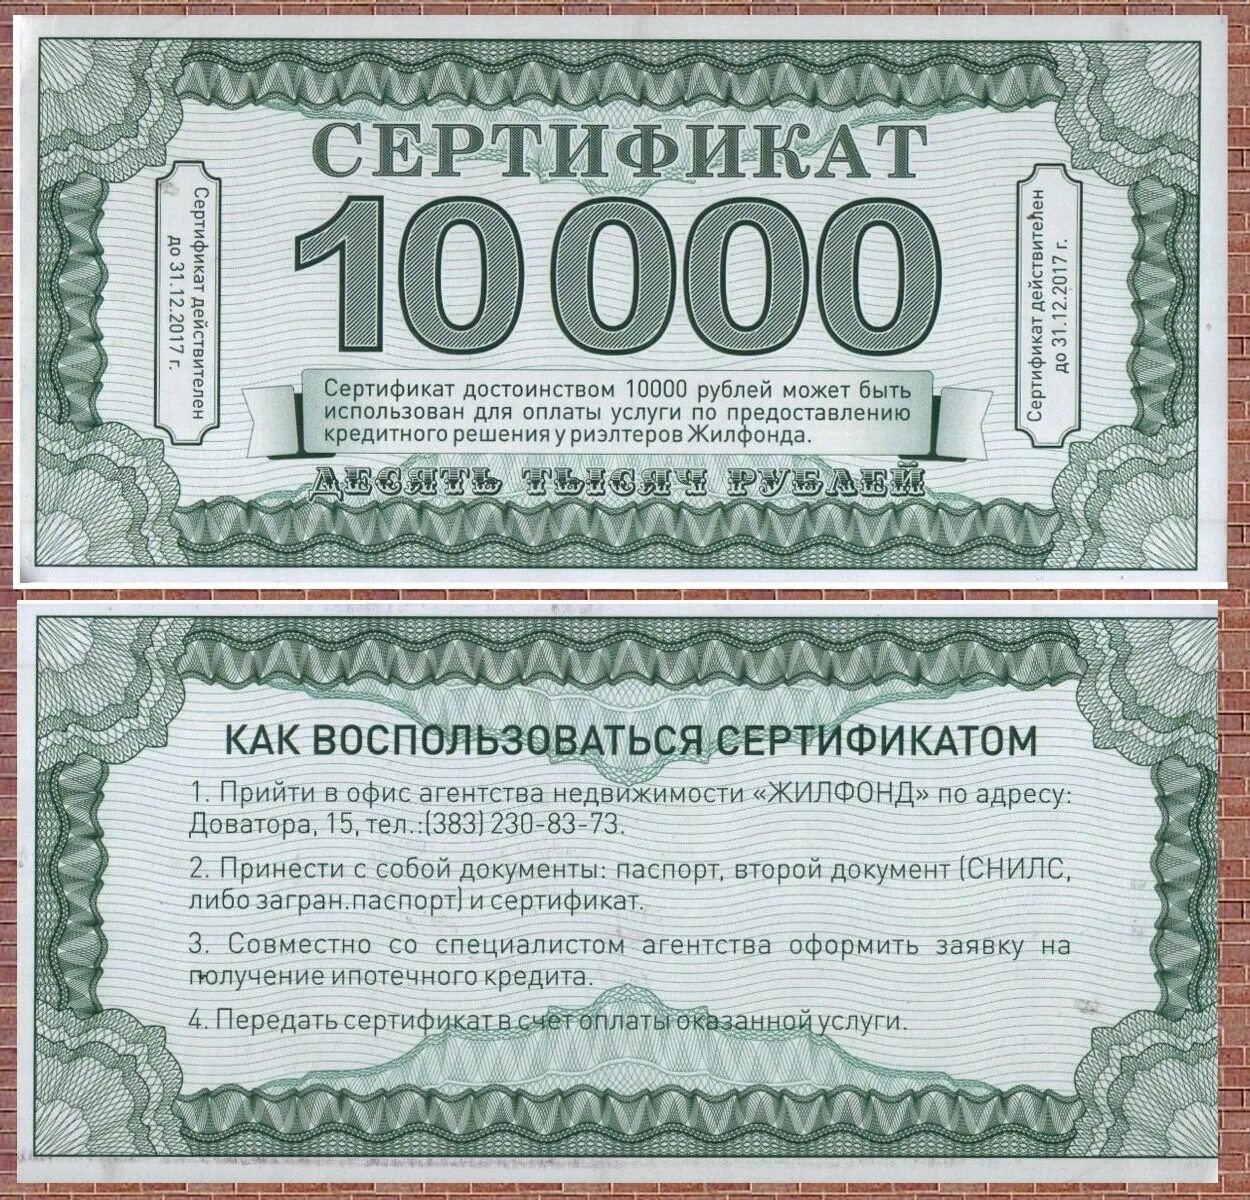 Сертификат на миллион рублей. Сертификат на 10 тысяч. Денежный сертификат на 10000. Подарочный сертификат на 10000 рублей. Сертификат на 10000 рублей.